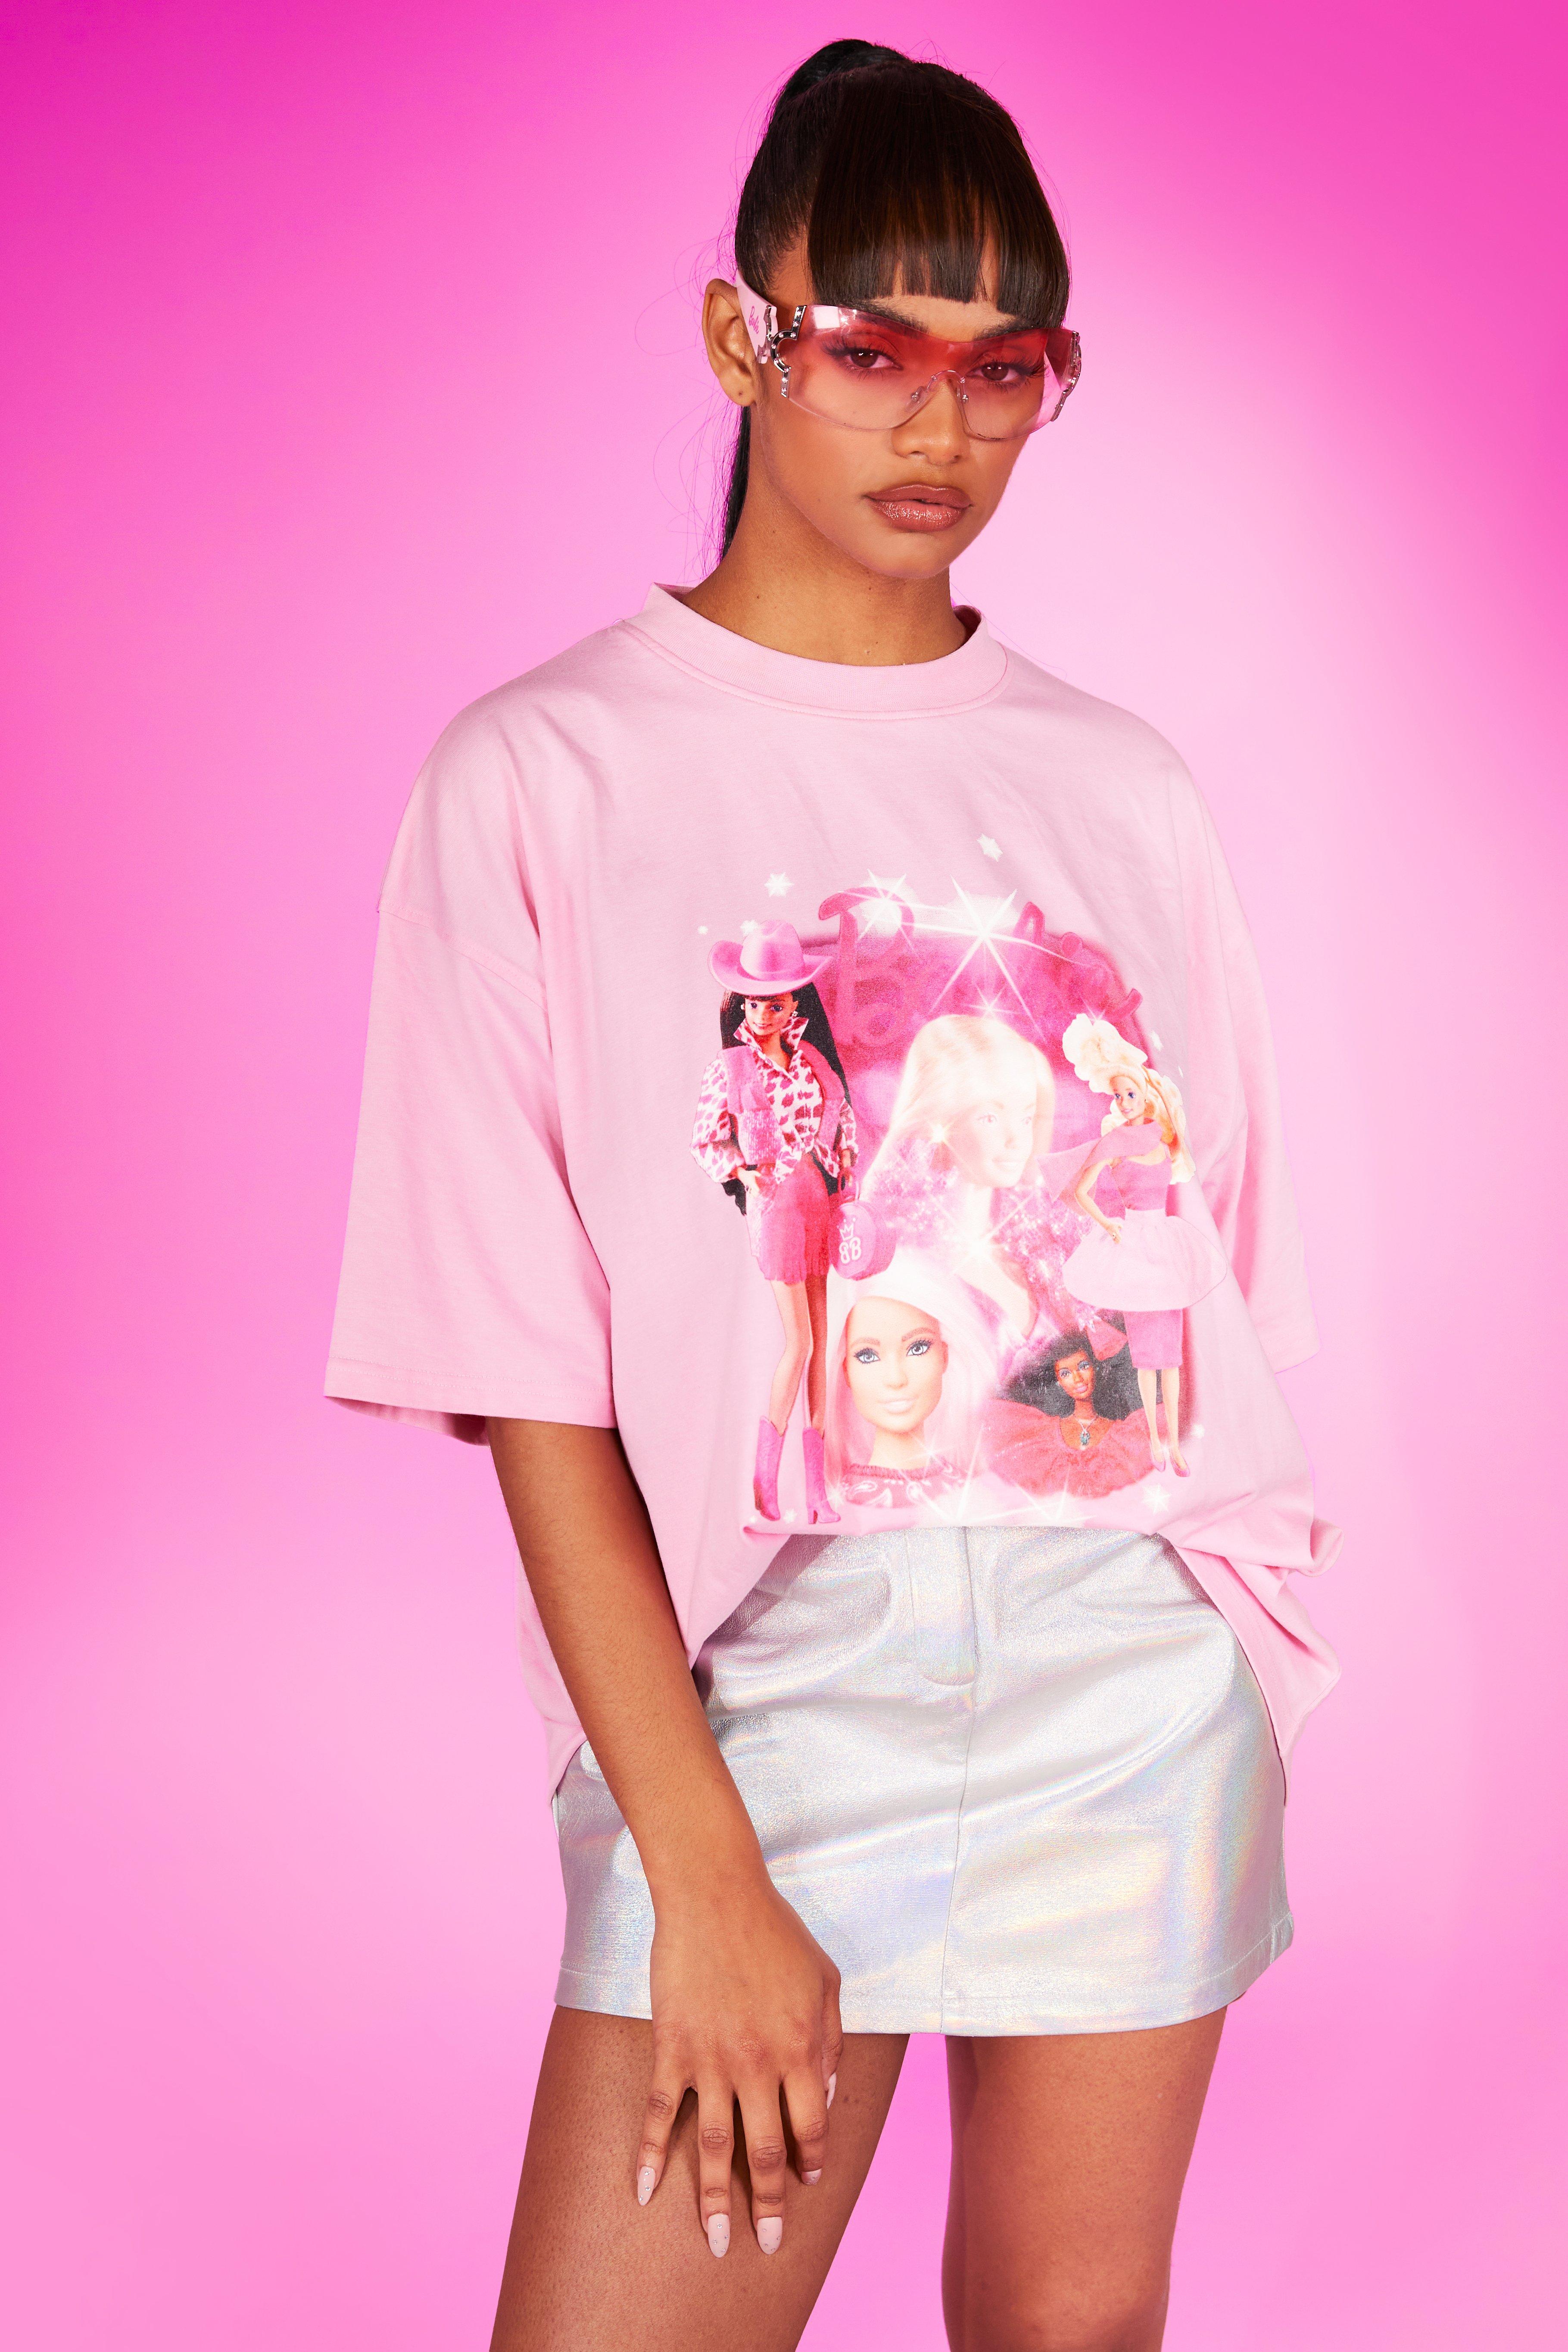 Camiseta Barbie Fucsia - Zepia moda